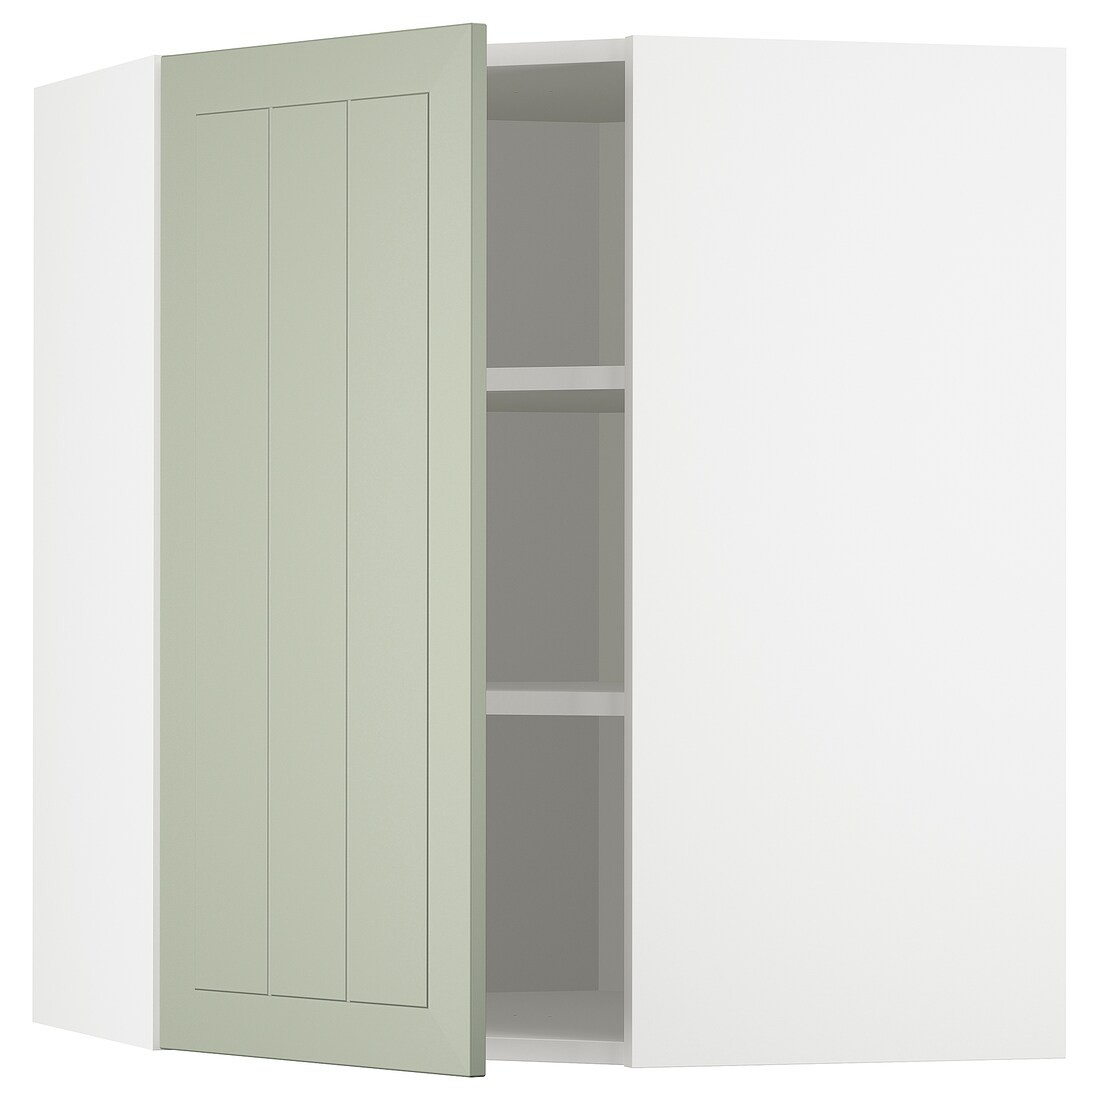 METOD МЕТОД Угловой навесной шкаф с полками, белый / Stensund светло-зеленый, 68x80 см